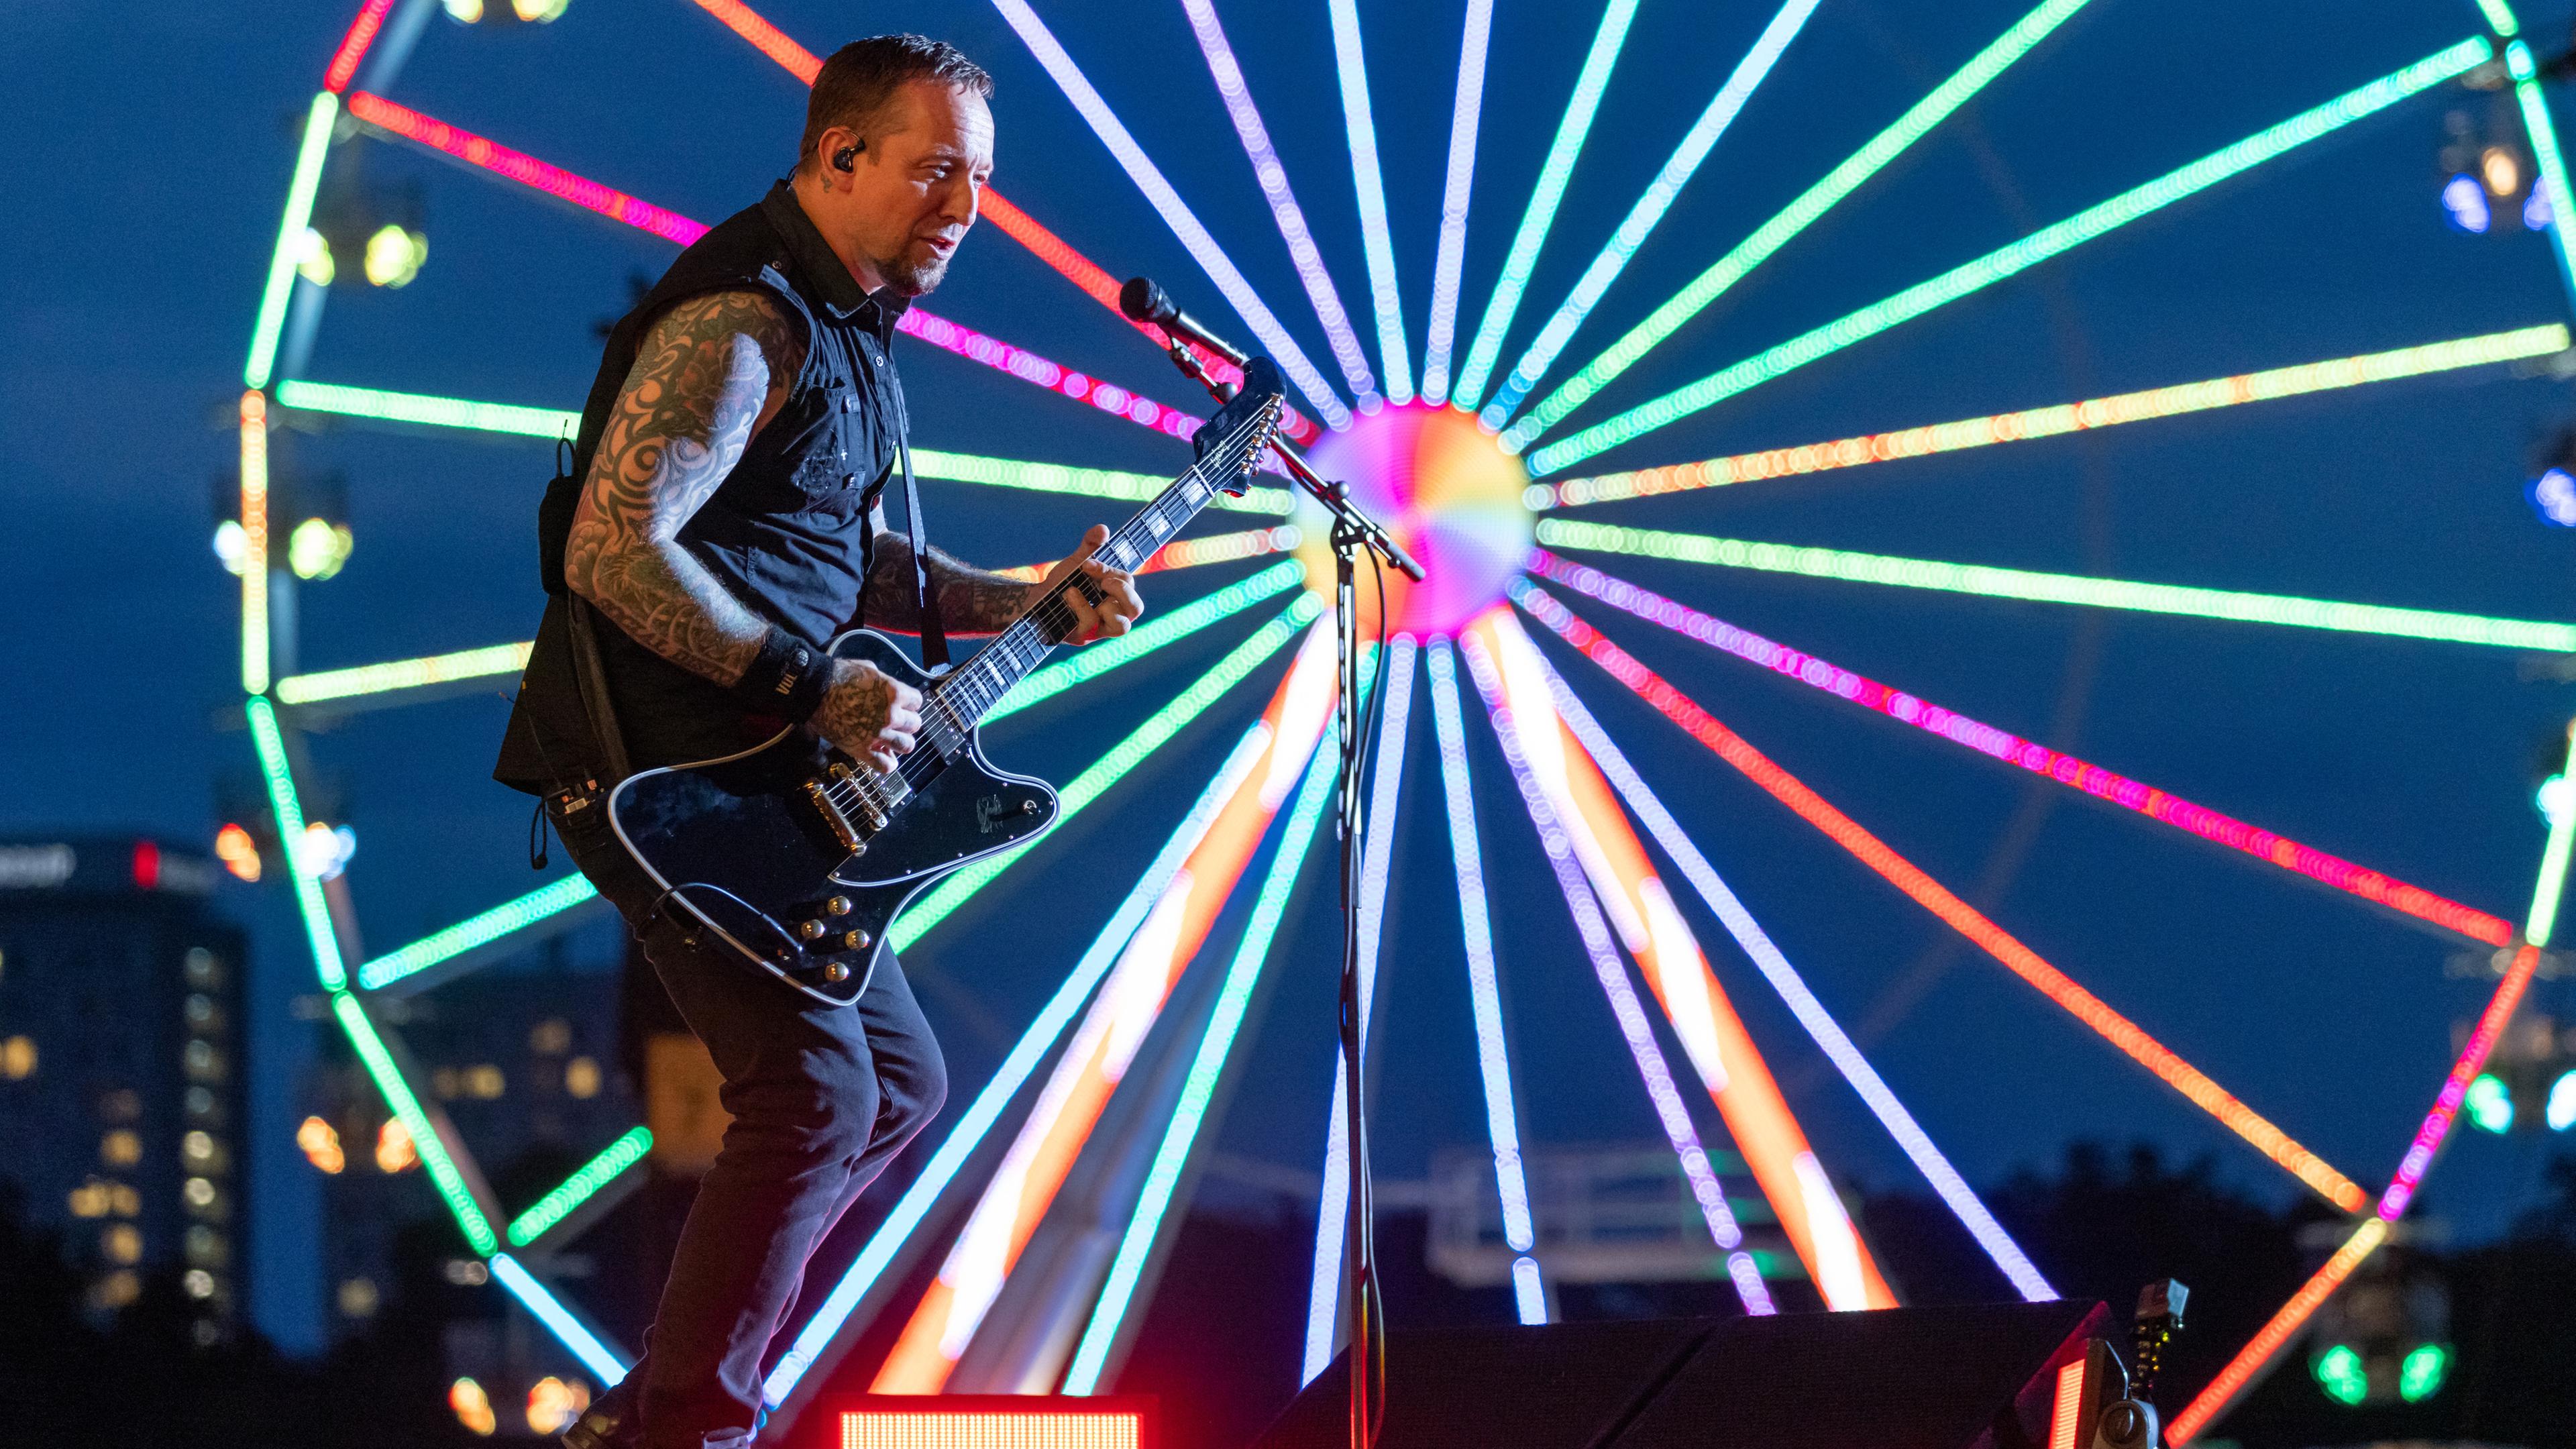 Bayern, Nürnberg: Michael Poulsen, Sänger und Gitarrist der dänischen Metal-Band Volbeat, steht mit seiner Band auf der Bühne beim Open-Air-Festival "Rock im Park".